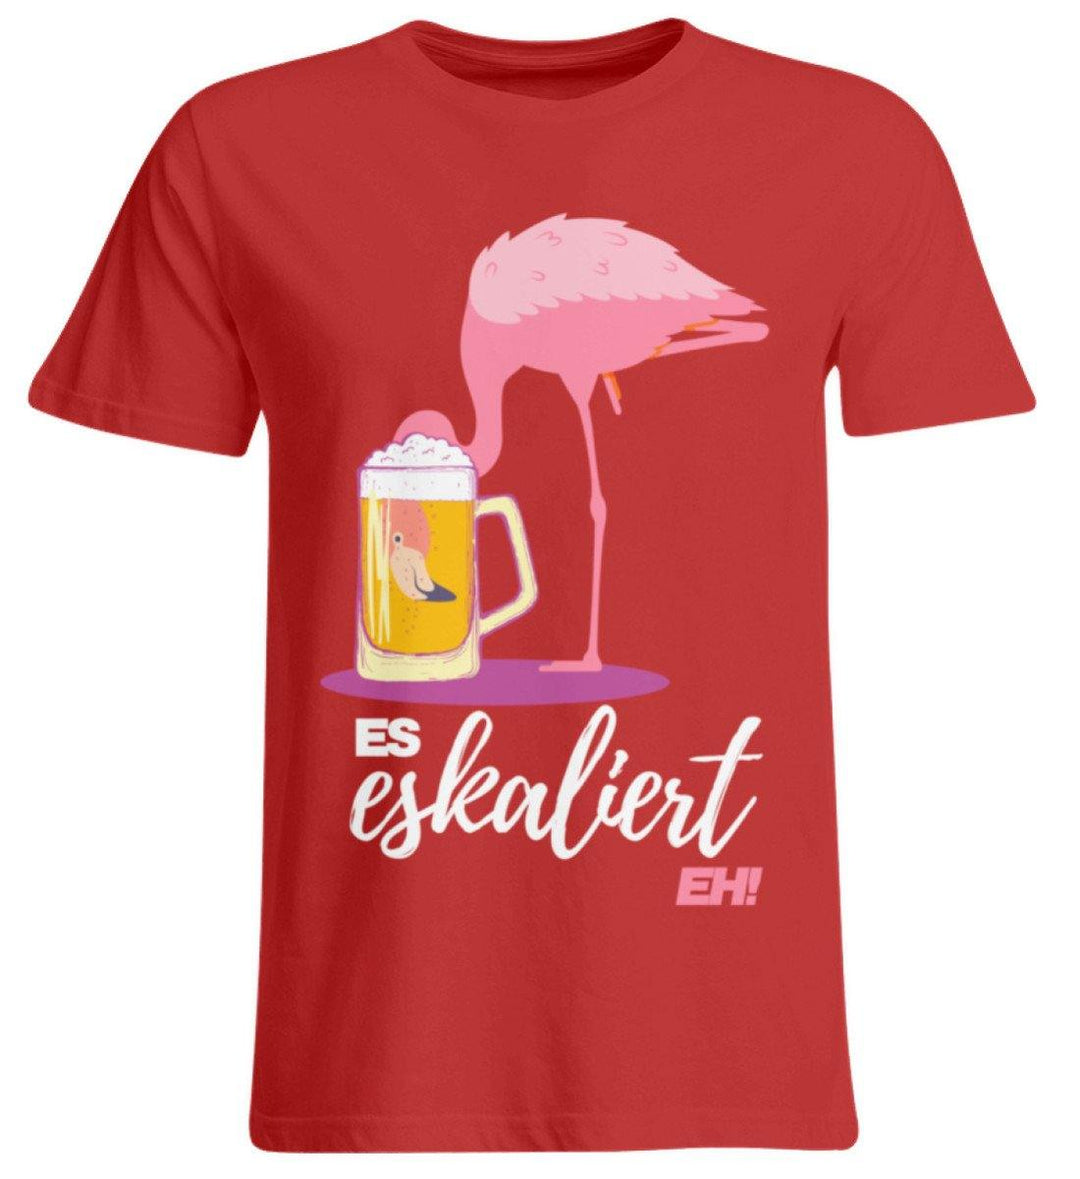 Es Eskaliert Eh - Flamingo  - Übergrößenshirt - Words on Shirts Sag es mit dem Mittelfinger Shirts Hoodies Sweatshirt Taschen Gymsack Spruch Sprüche Statement